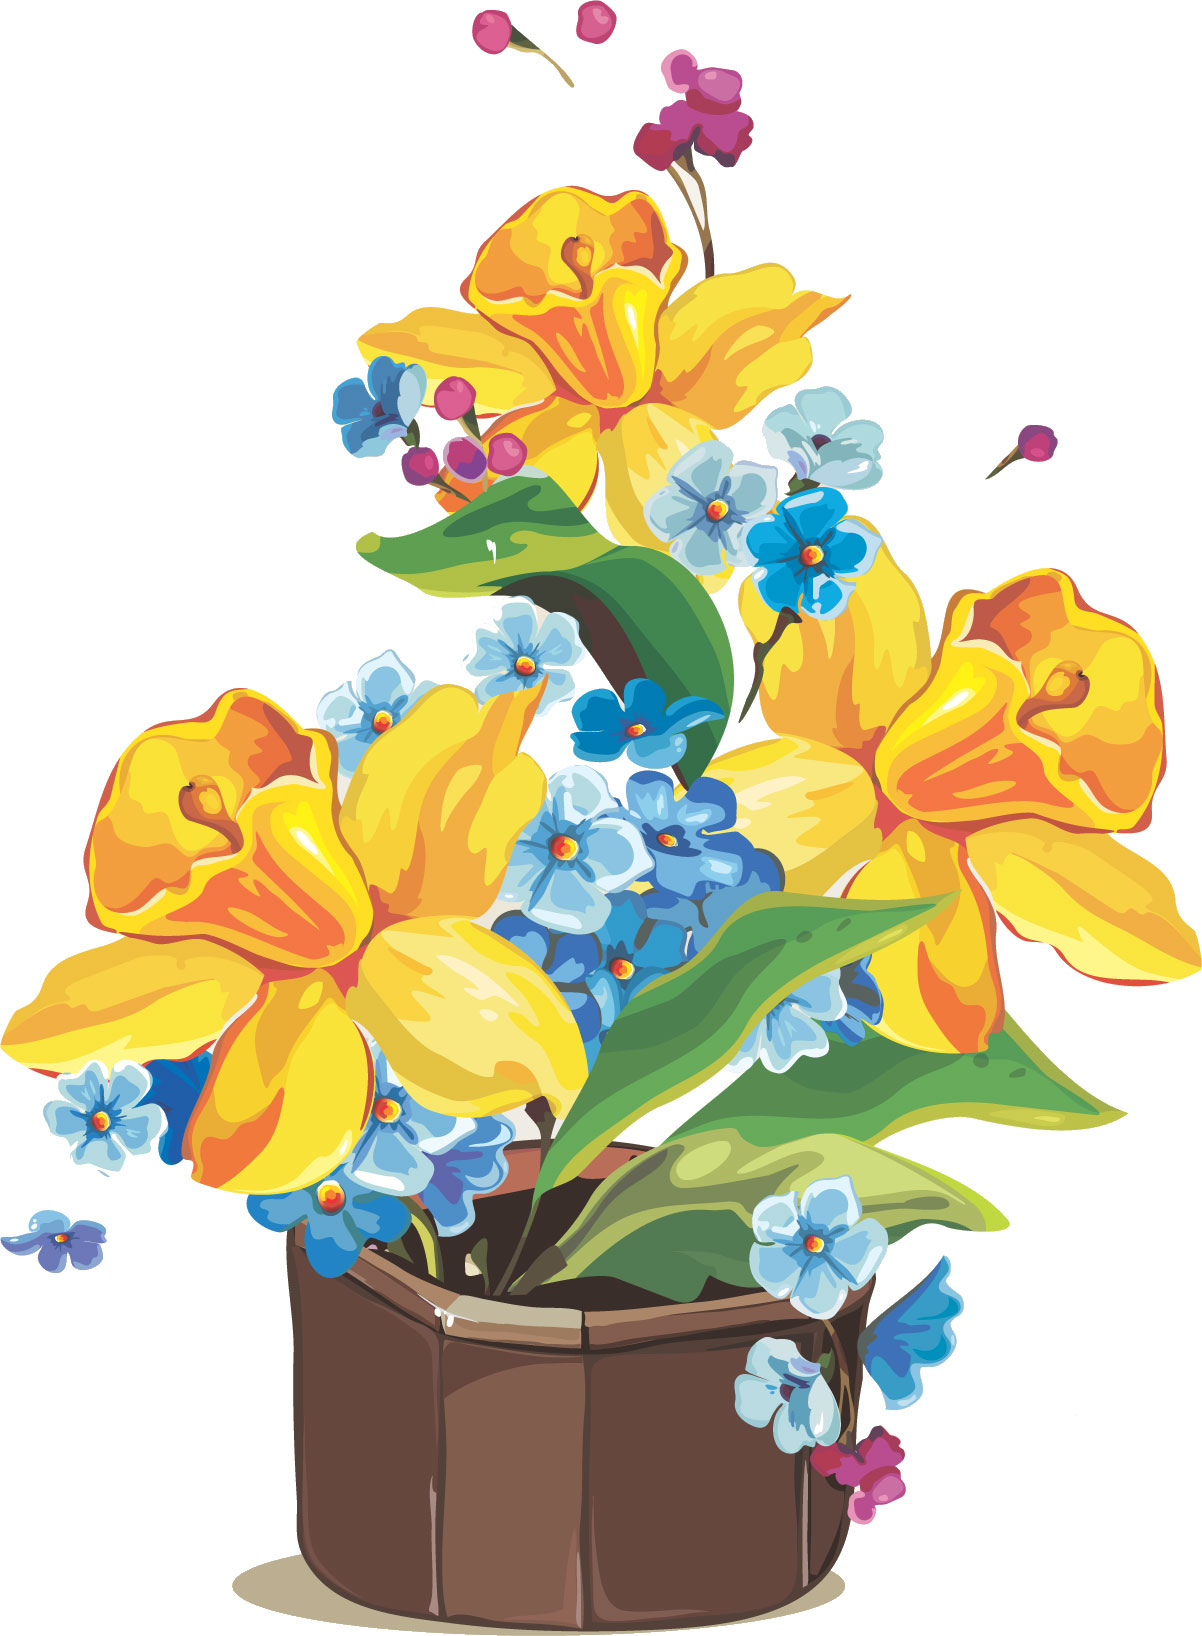 すいせん 水仙 のイラスト 画像no 26 スイセンの鉢植え 無料のフリー素材集 百花繚乱